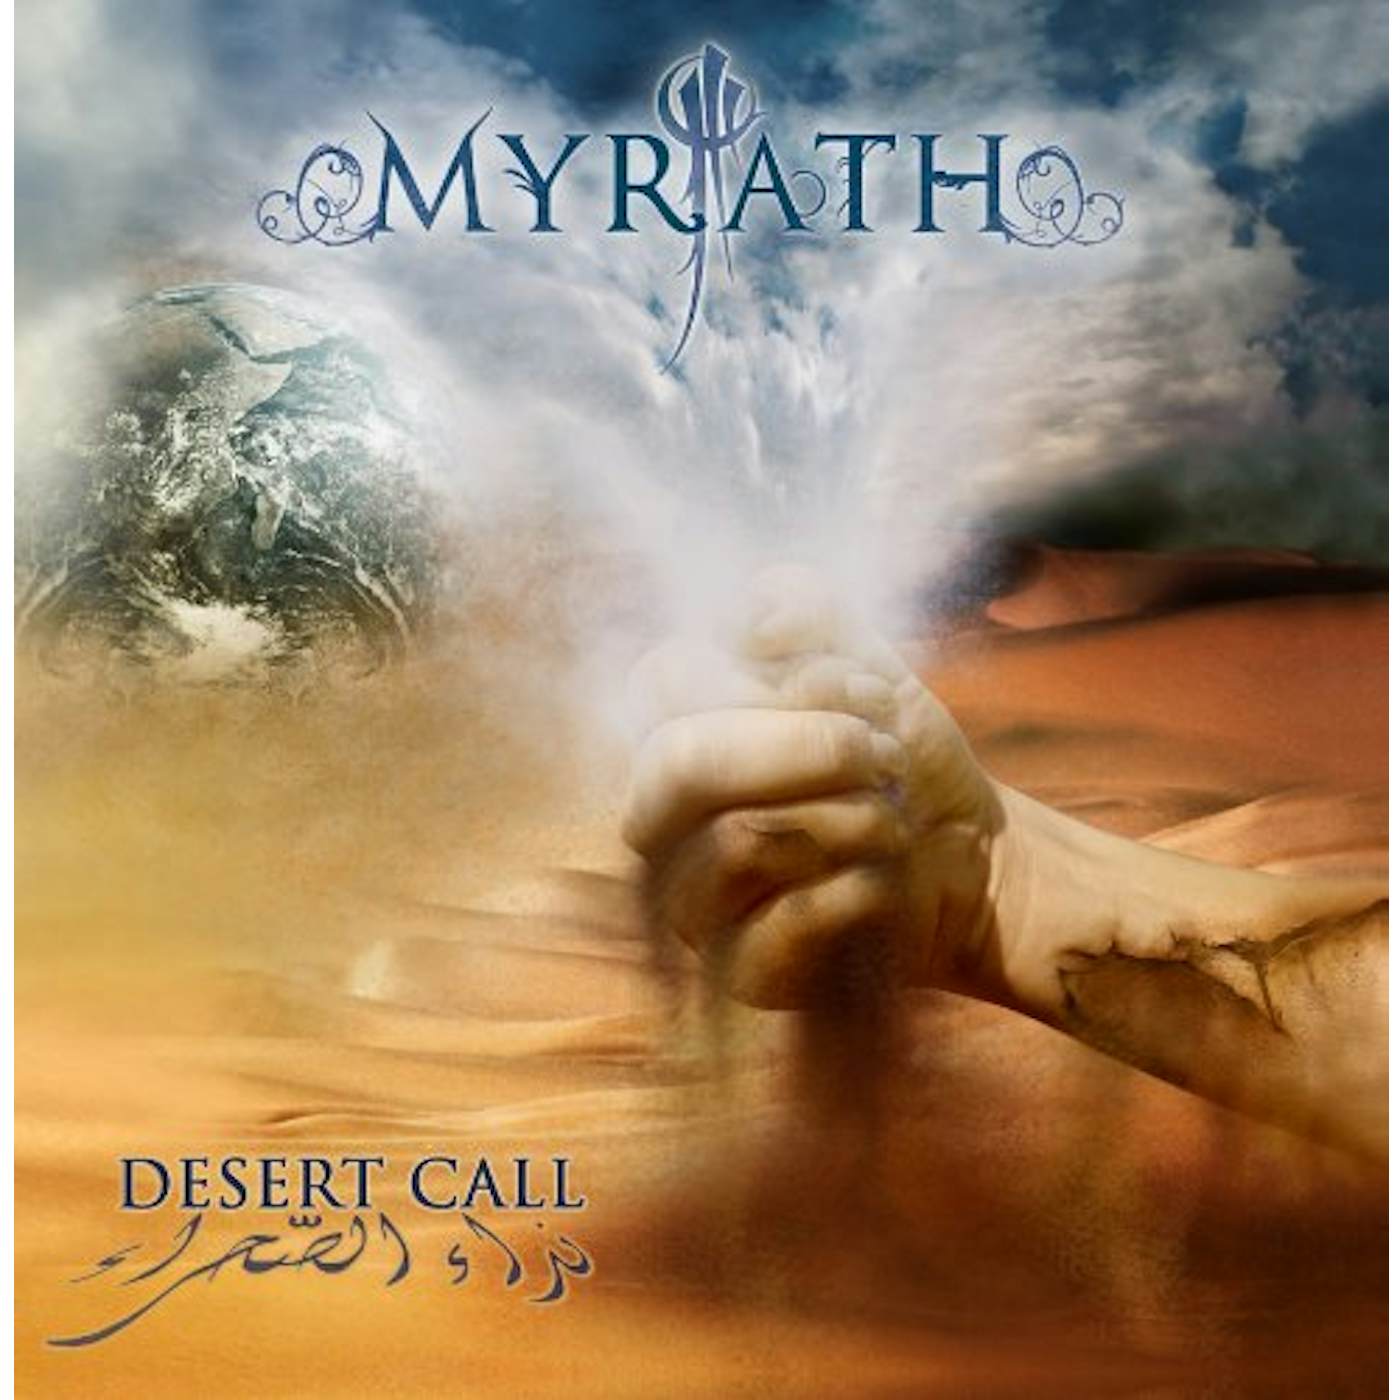 Myrath DESERT CALL CD